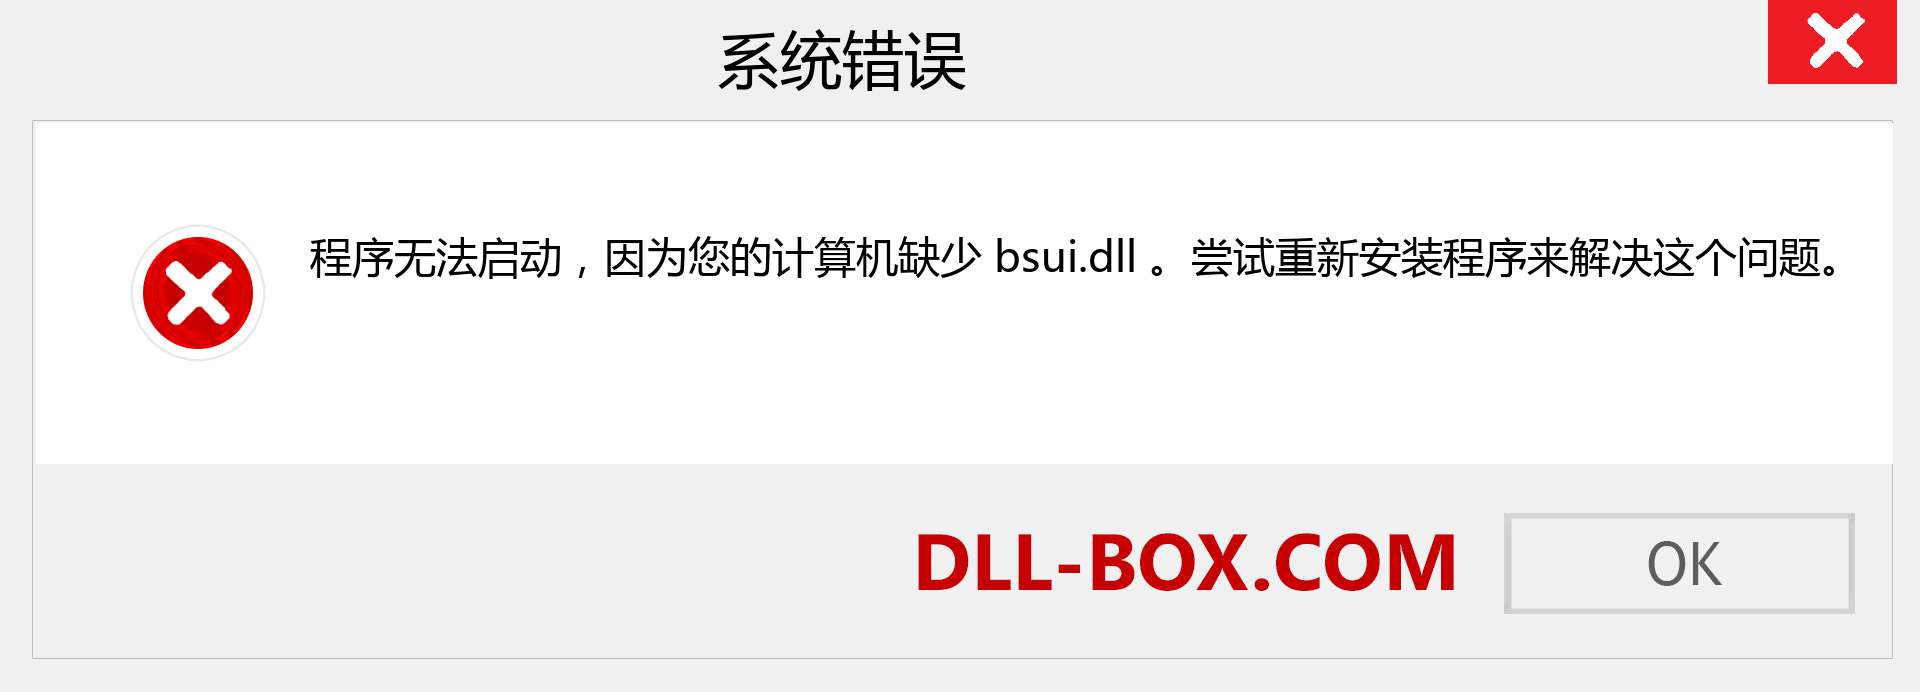 bsui.dll 文件丢失？。 适用于 Windows 7、8、10 的下载 - 修复 Windows、照片、图像上的 bsui dll 丢失错误